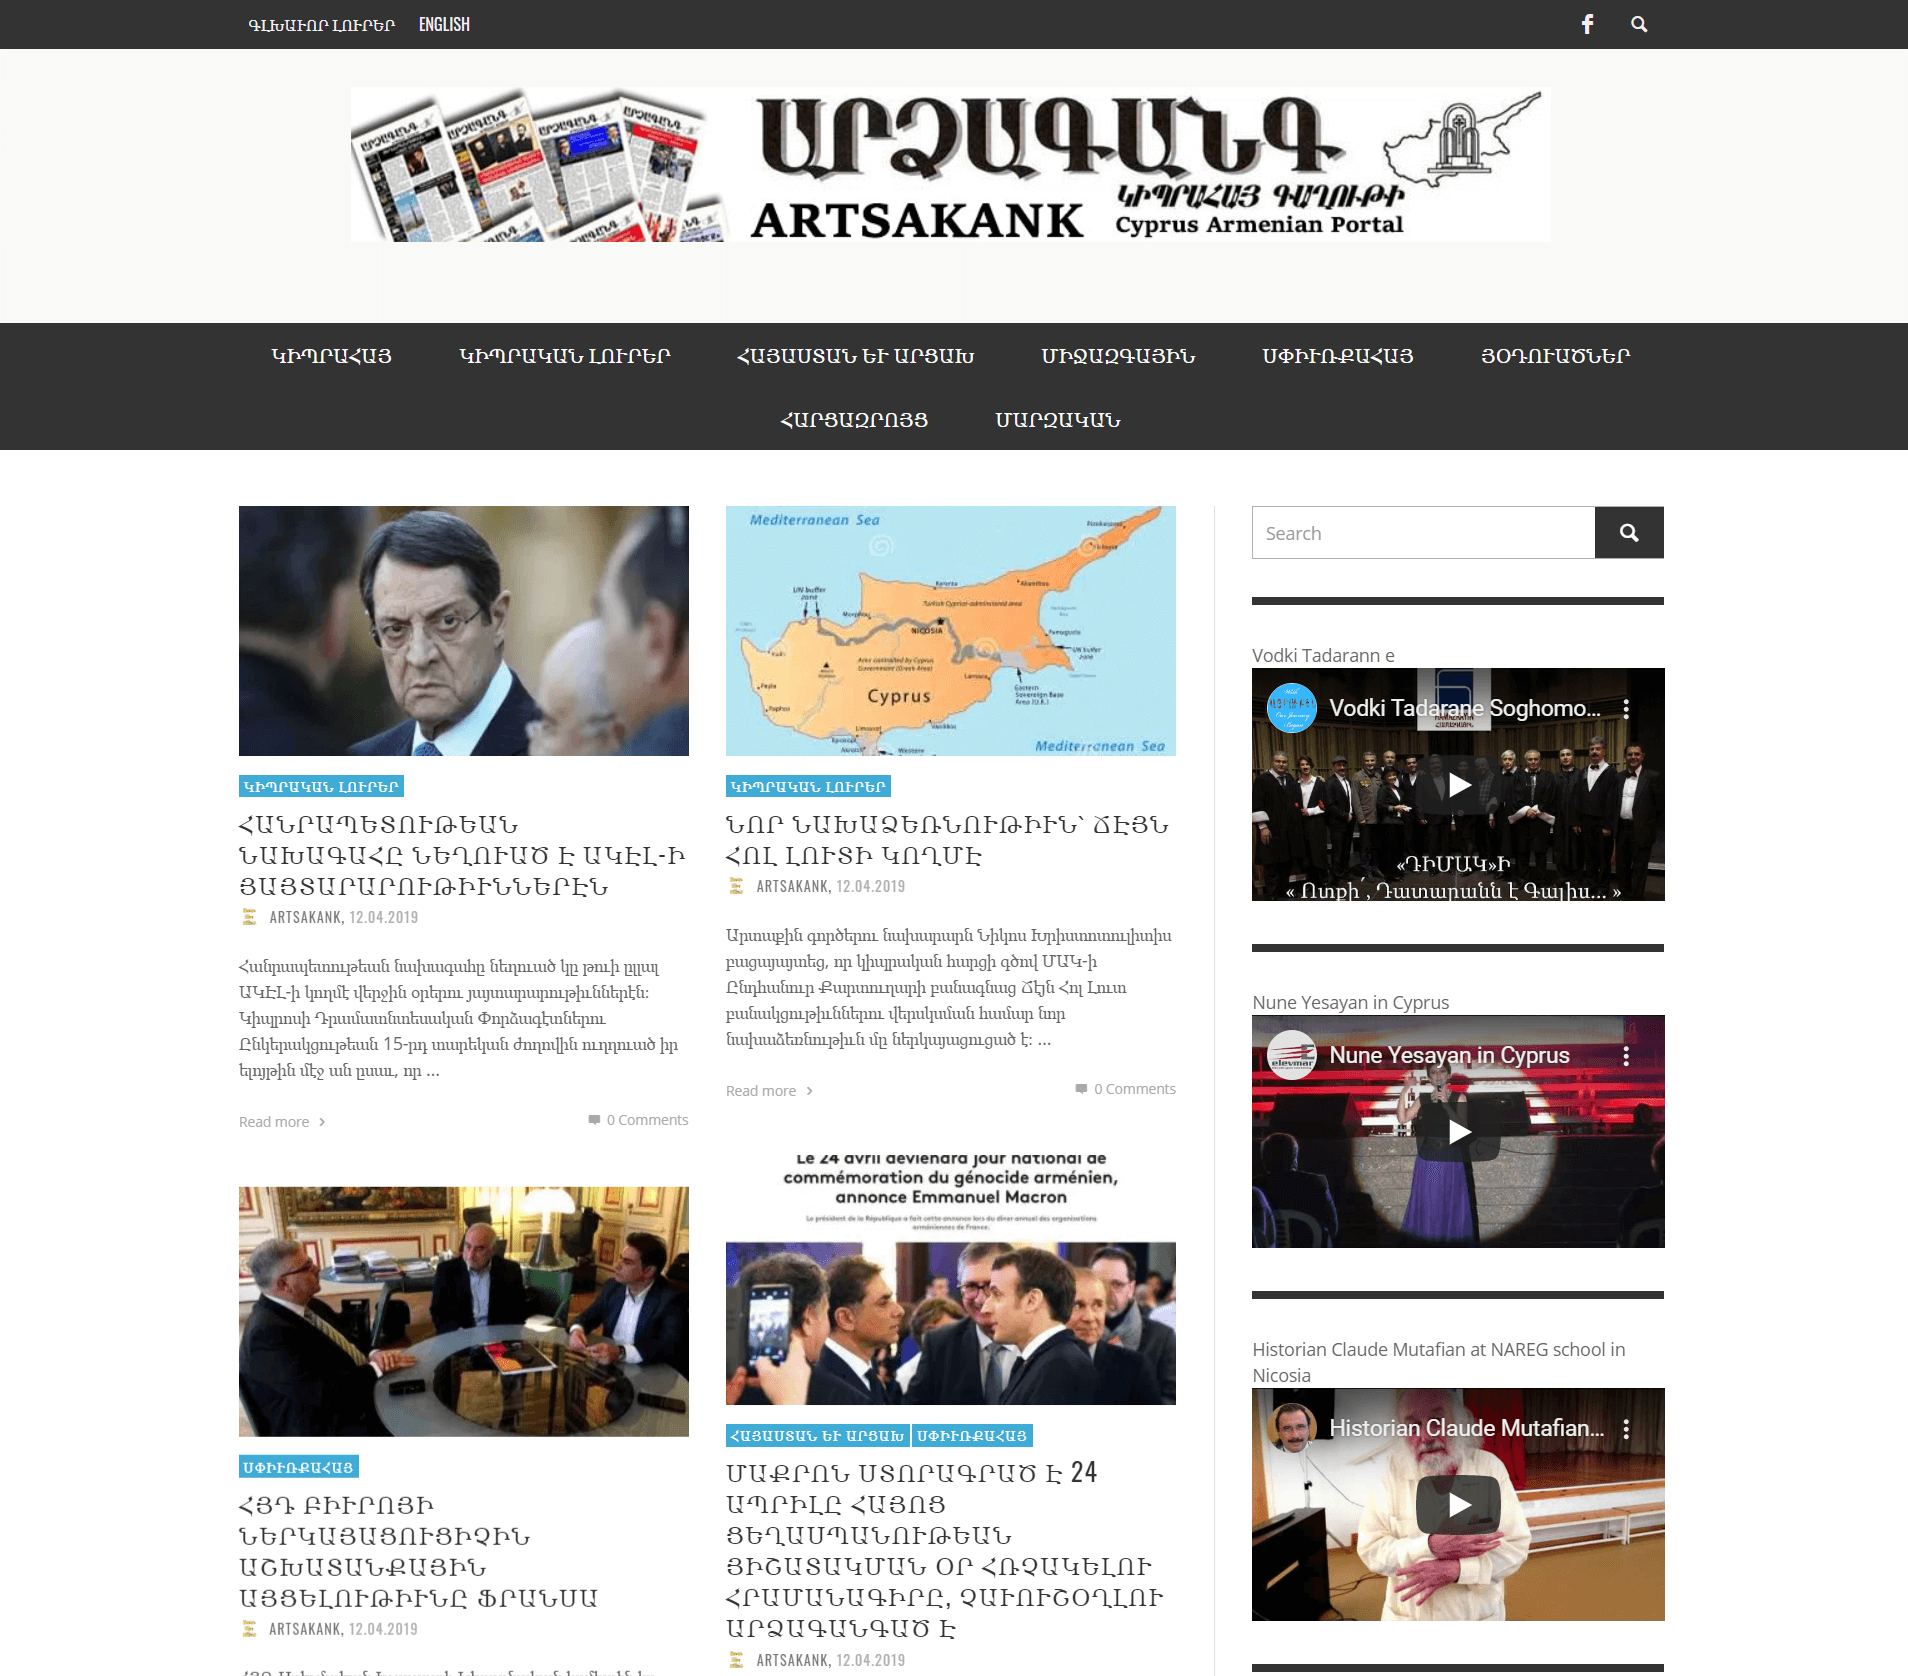 cyprus newspaper 9 artsakank